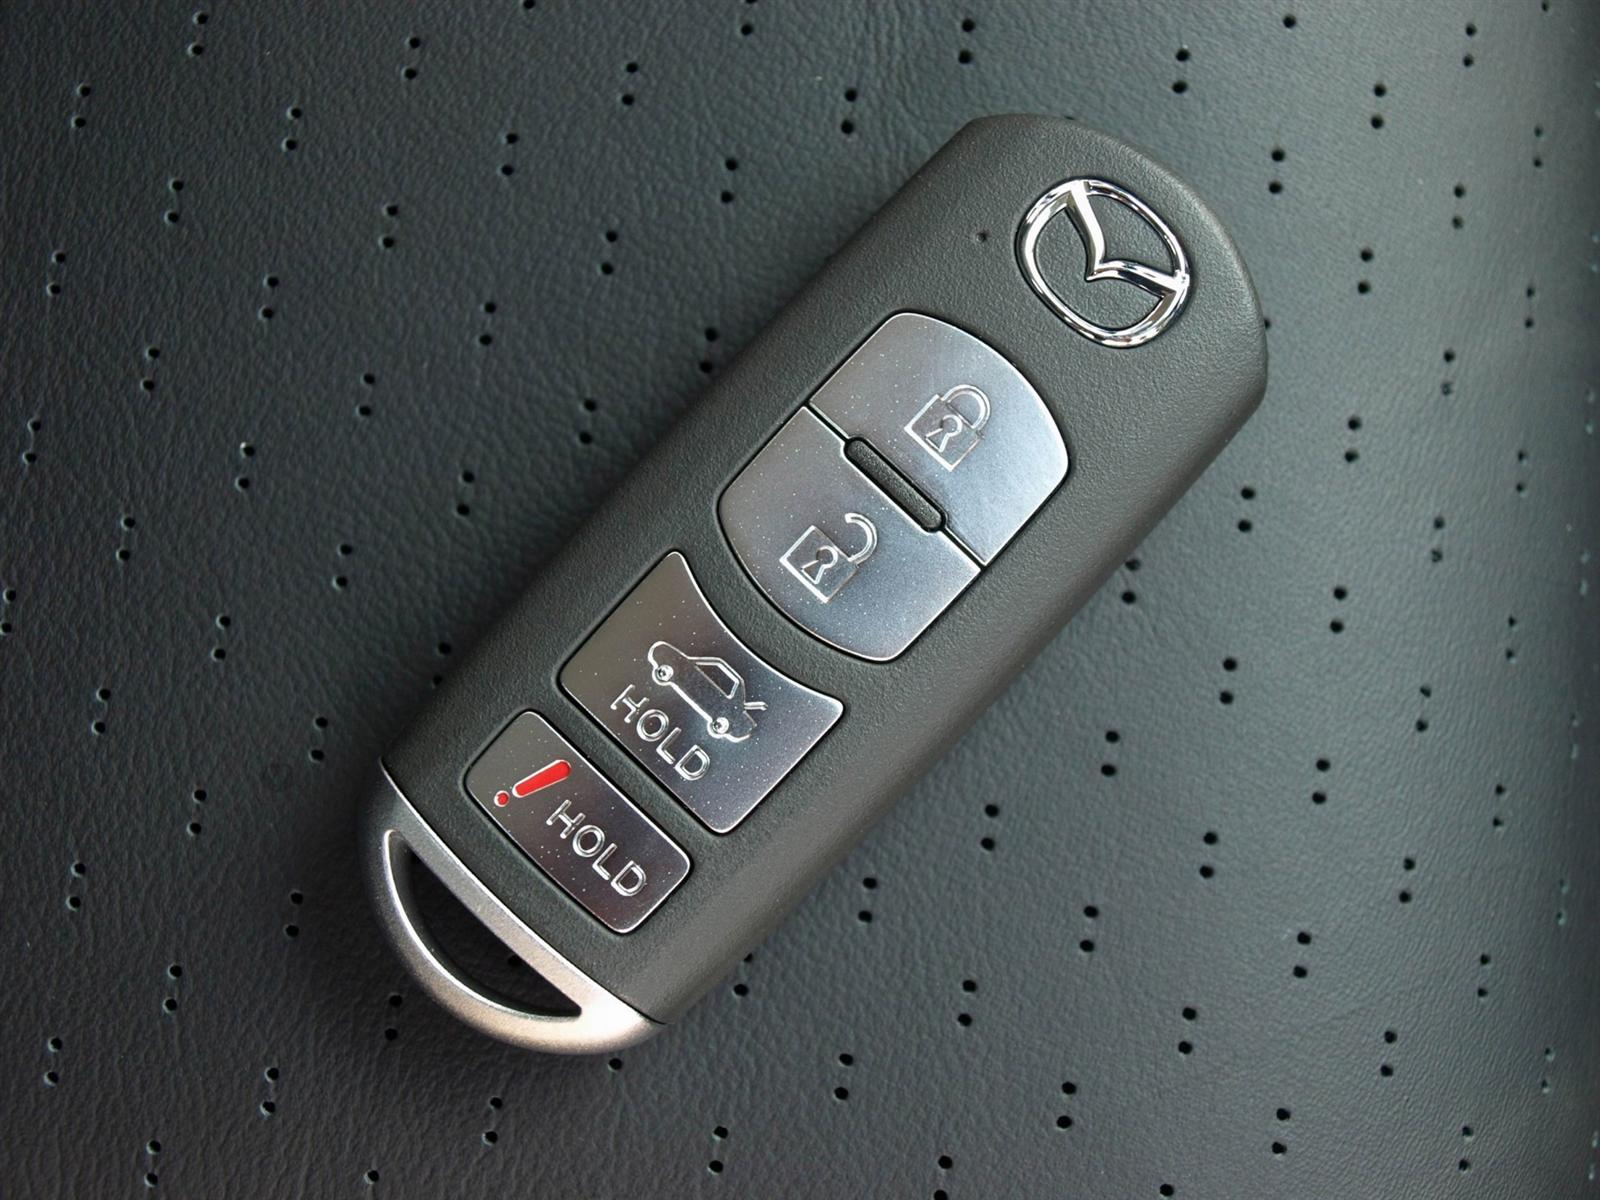 2009 Mazda 6